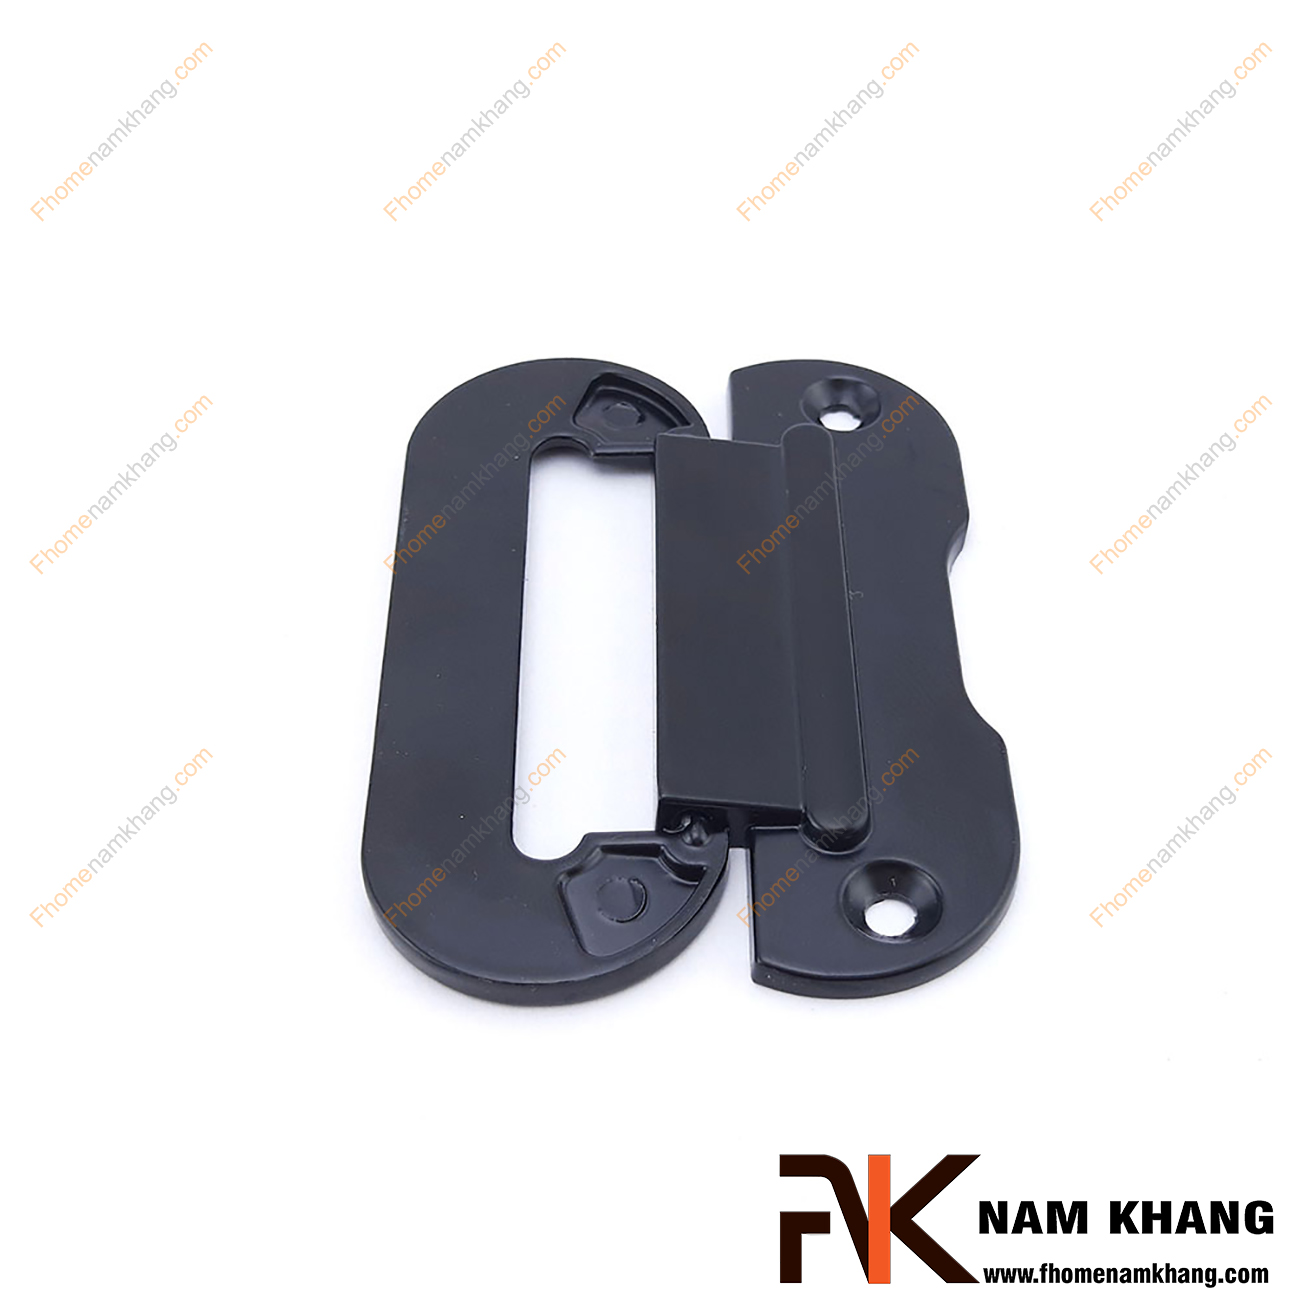 Tay nắm tủ hiện đại màu đen NK381-64D là một dạng tay nắm tủ thiết kế rất tinh tế và hiện đại. Sản phẩm tay nắm gồm 2 phần rời nhau, phần đế được cố định bởi 2 vít vặn và phần thân nắm có thể đóng gập dễ dàng.